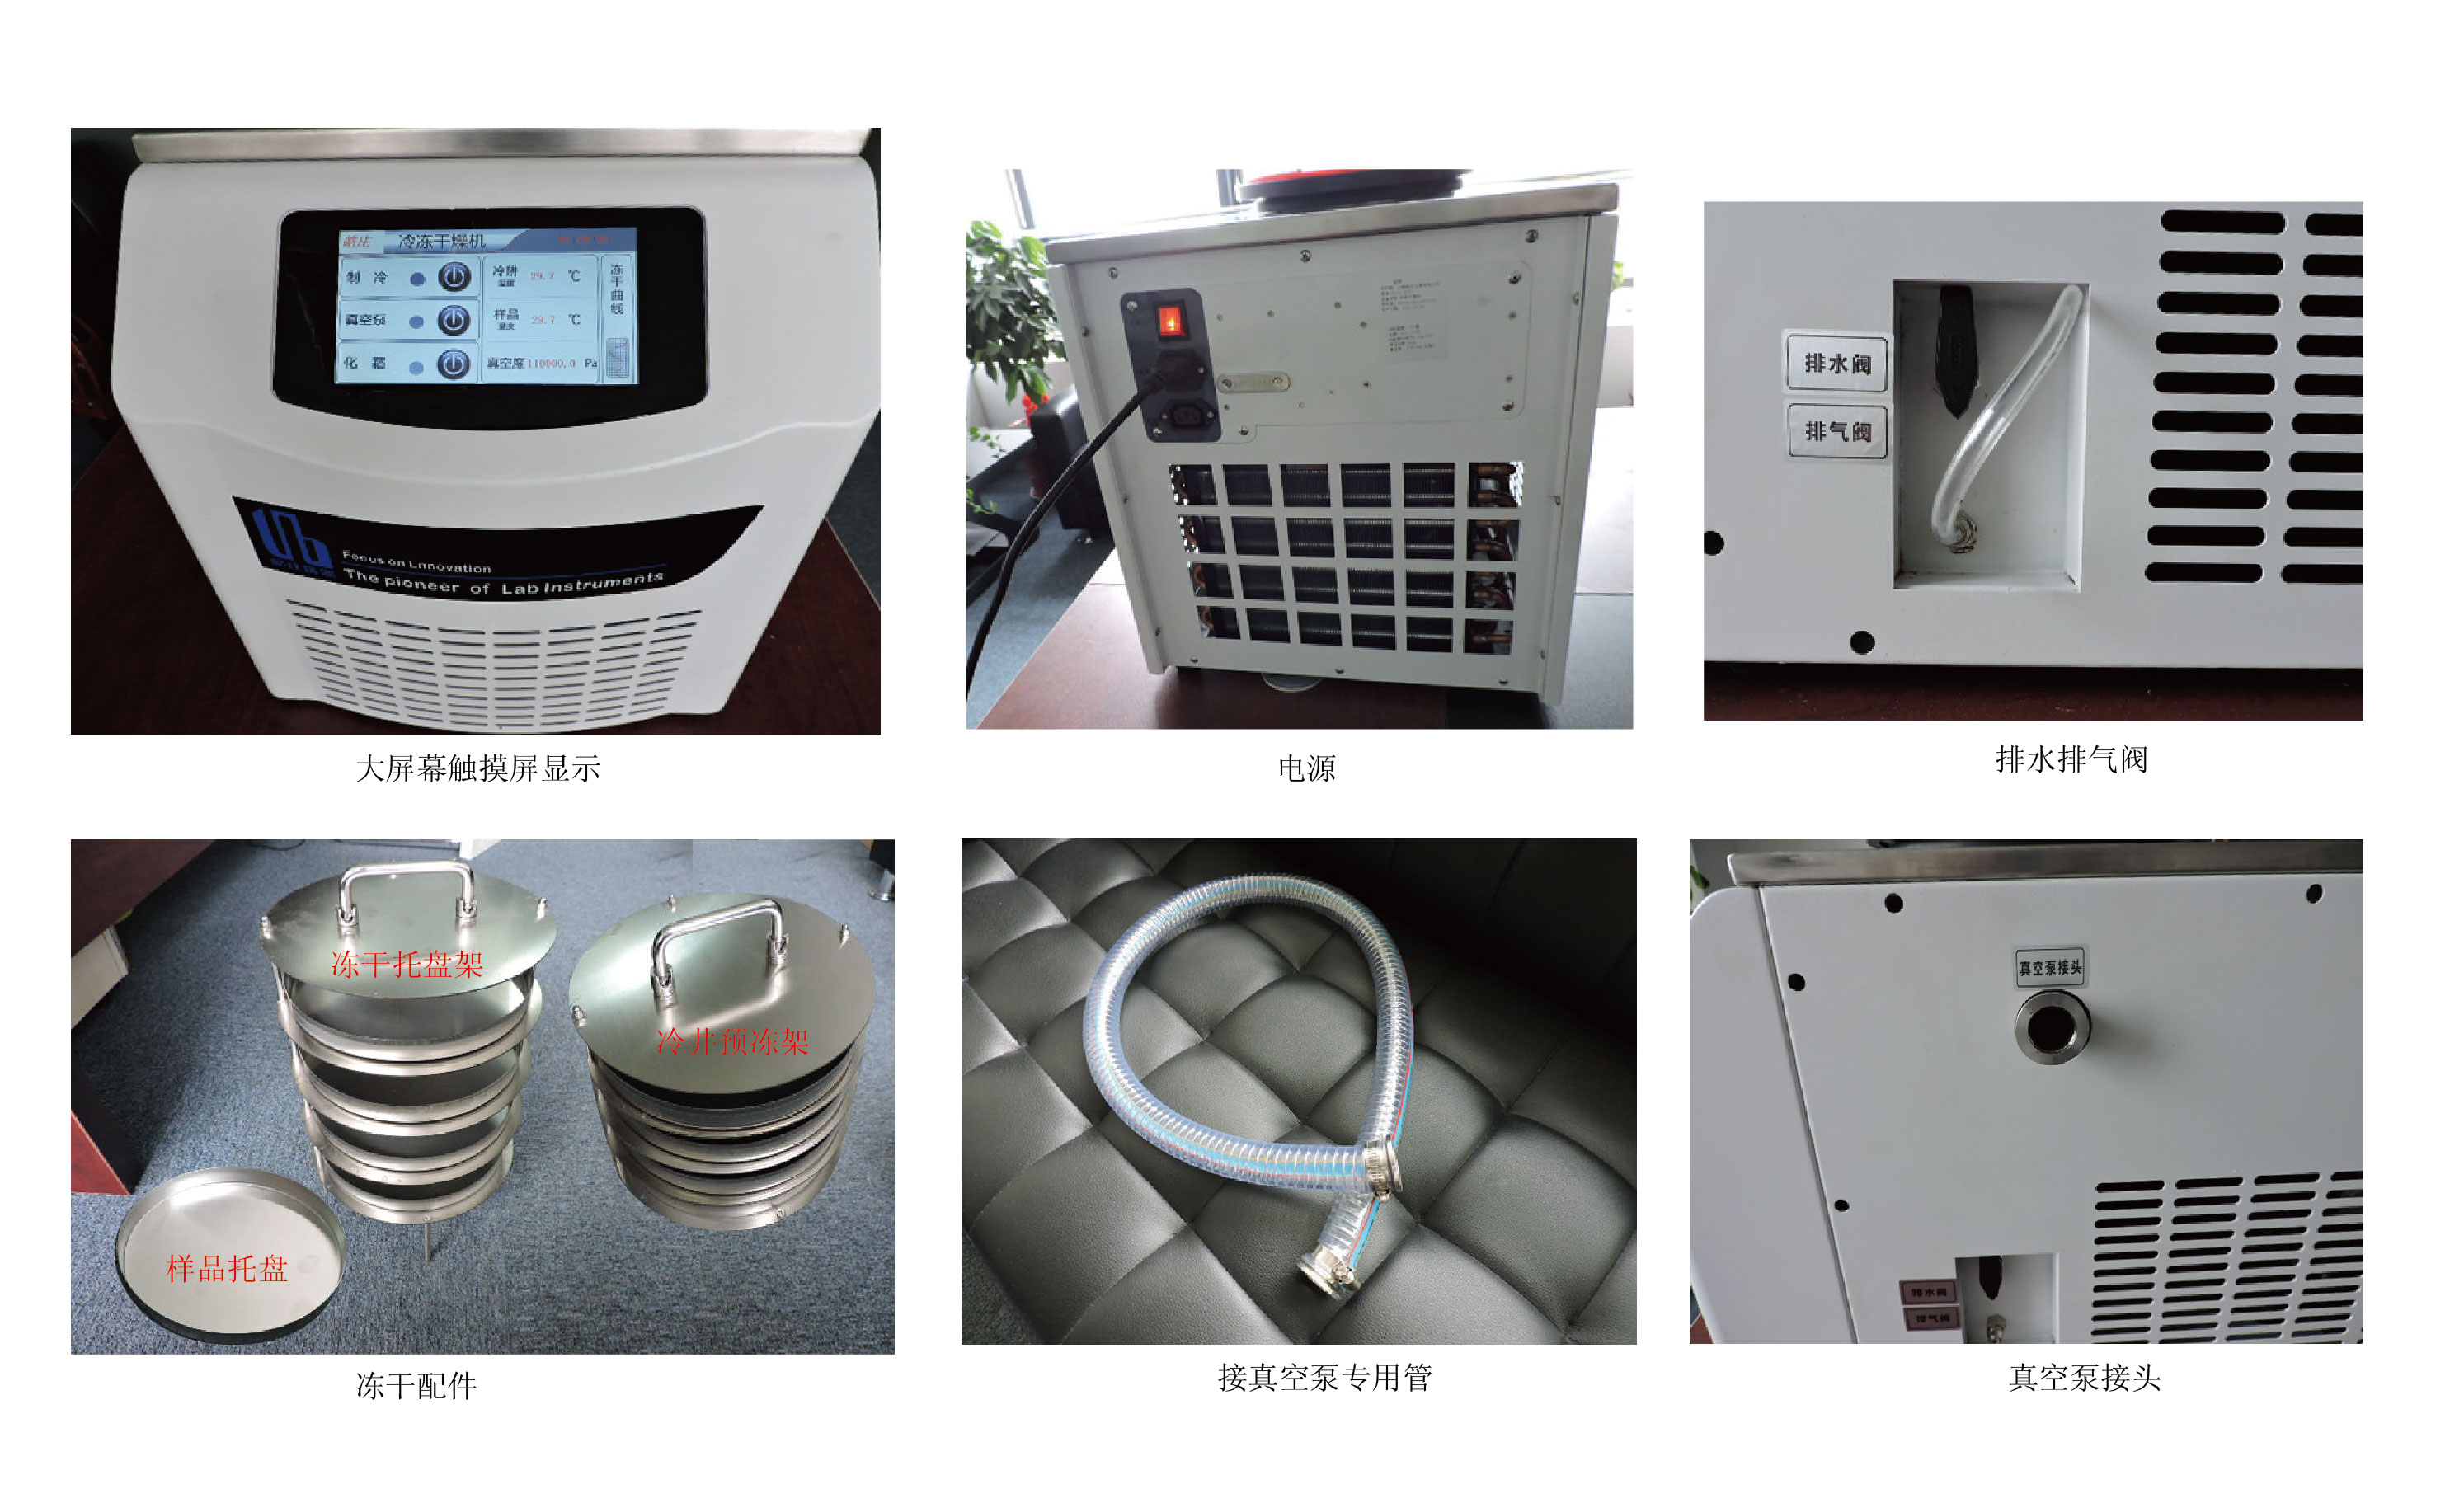 冷冻干燥机,皓庄,FD-C12N-80 多歧管型